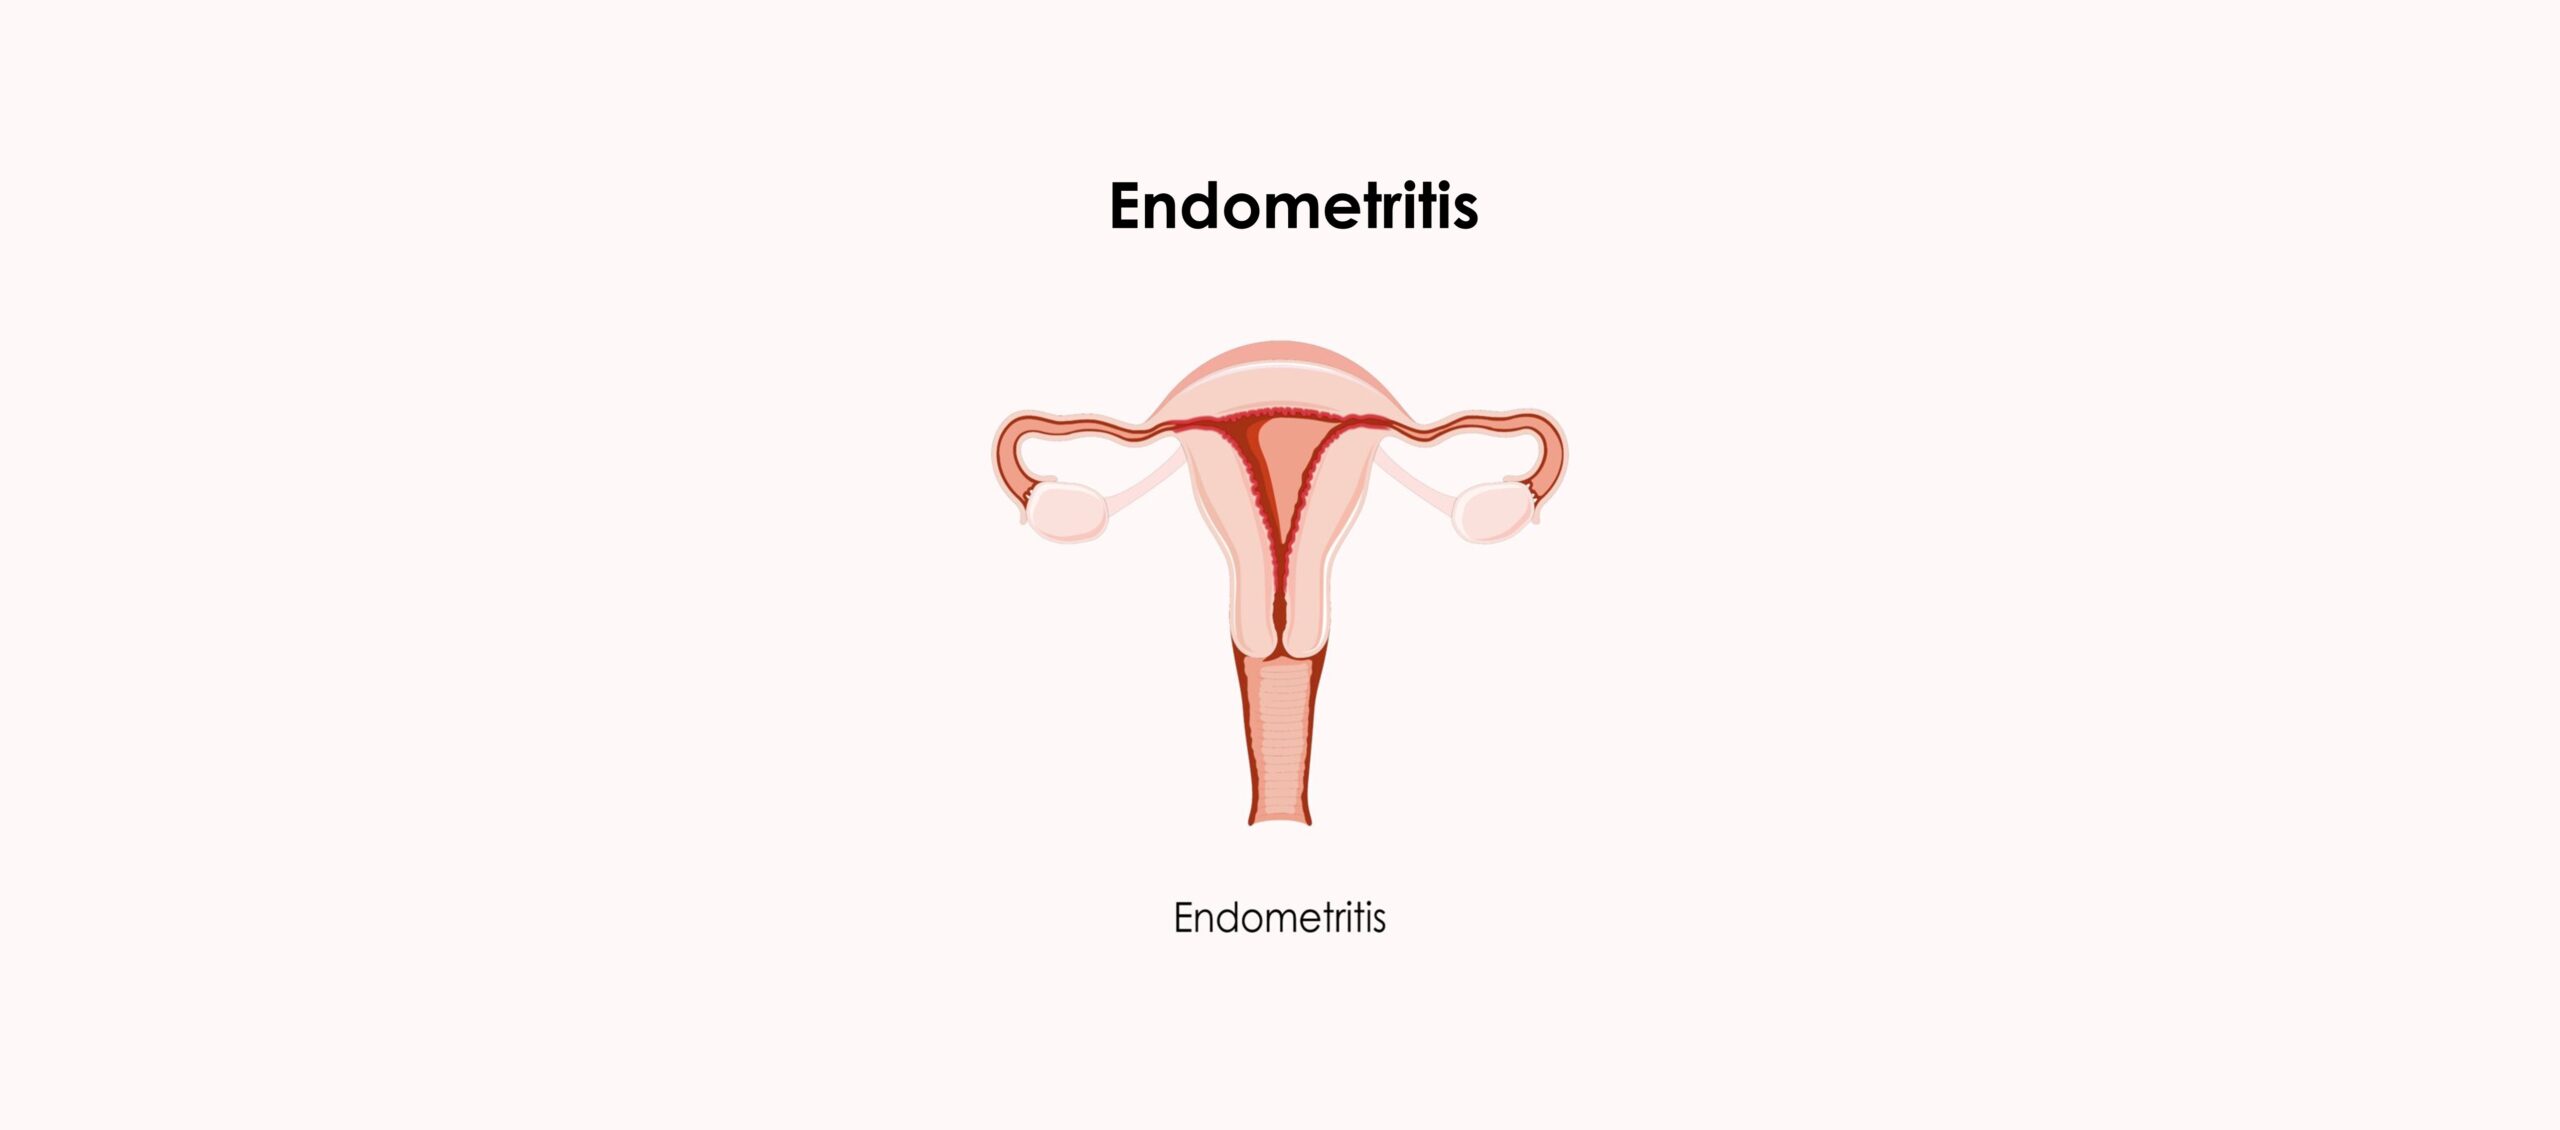 Endometritis, causa de infertilidad por factor uterino